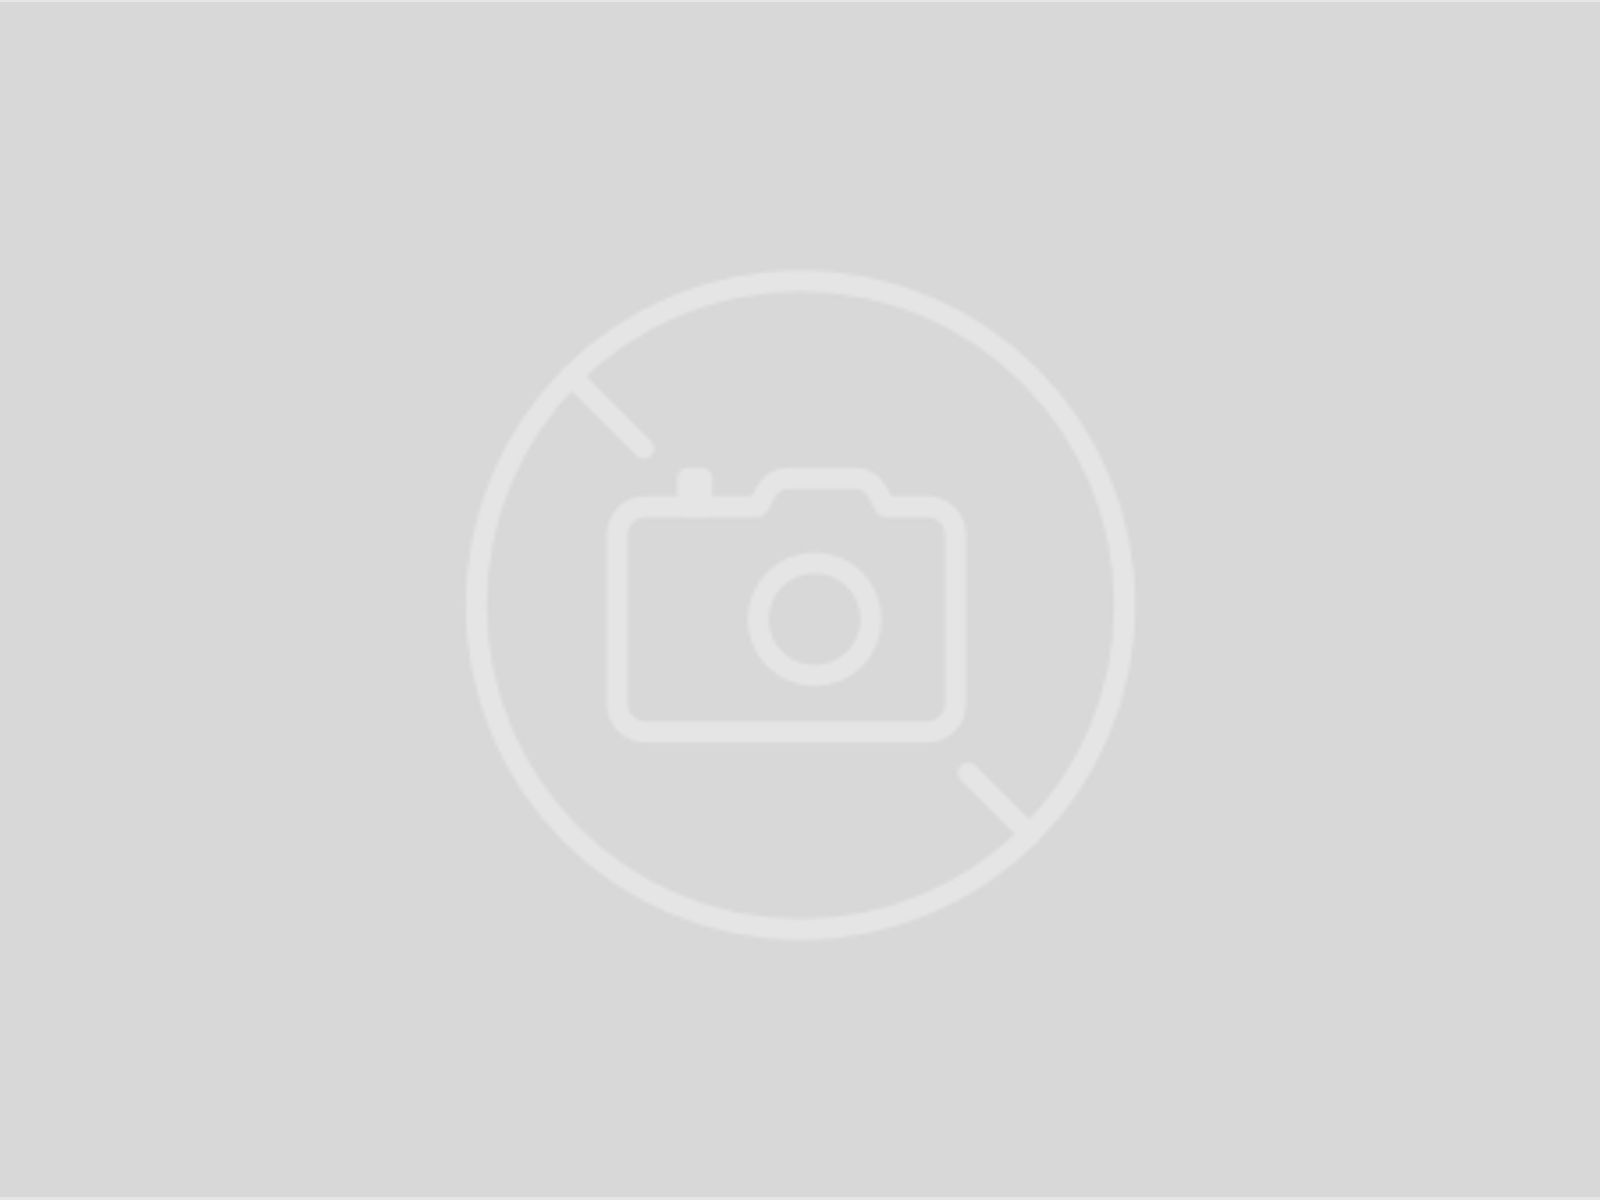 Leica Zielfernrohr Fortis 6 1-6x24 i ohne Schiene